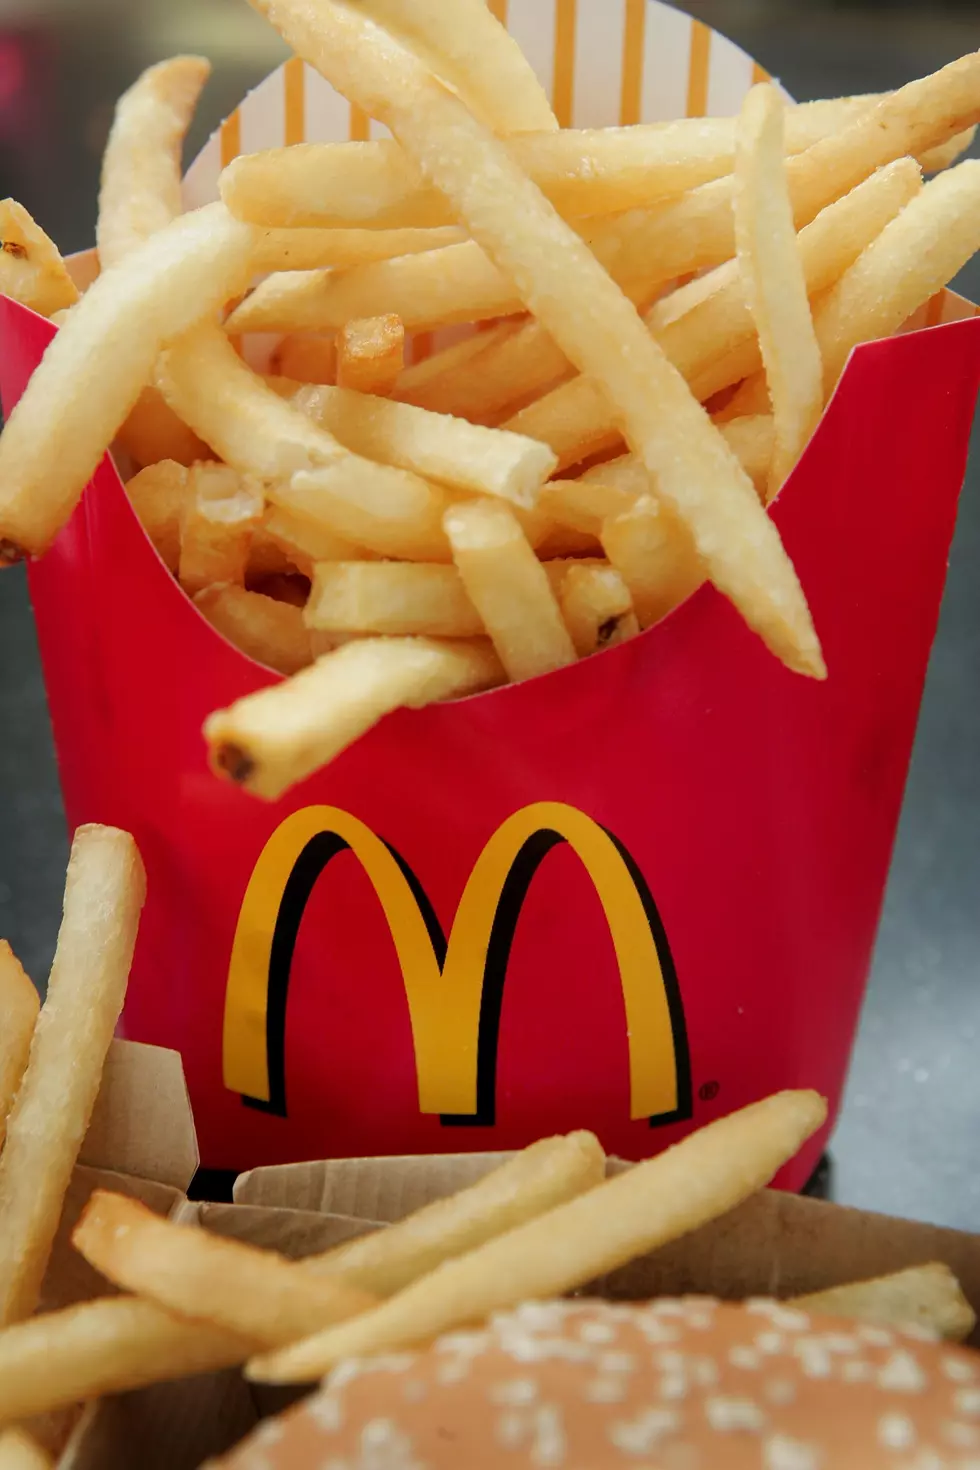 McDonald’s Fries Just Got Better